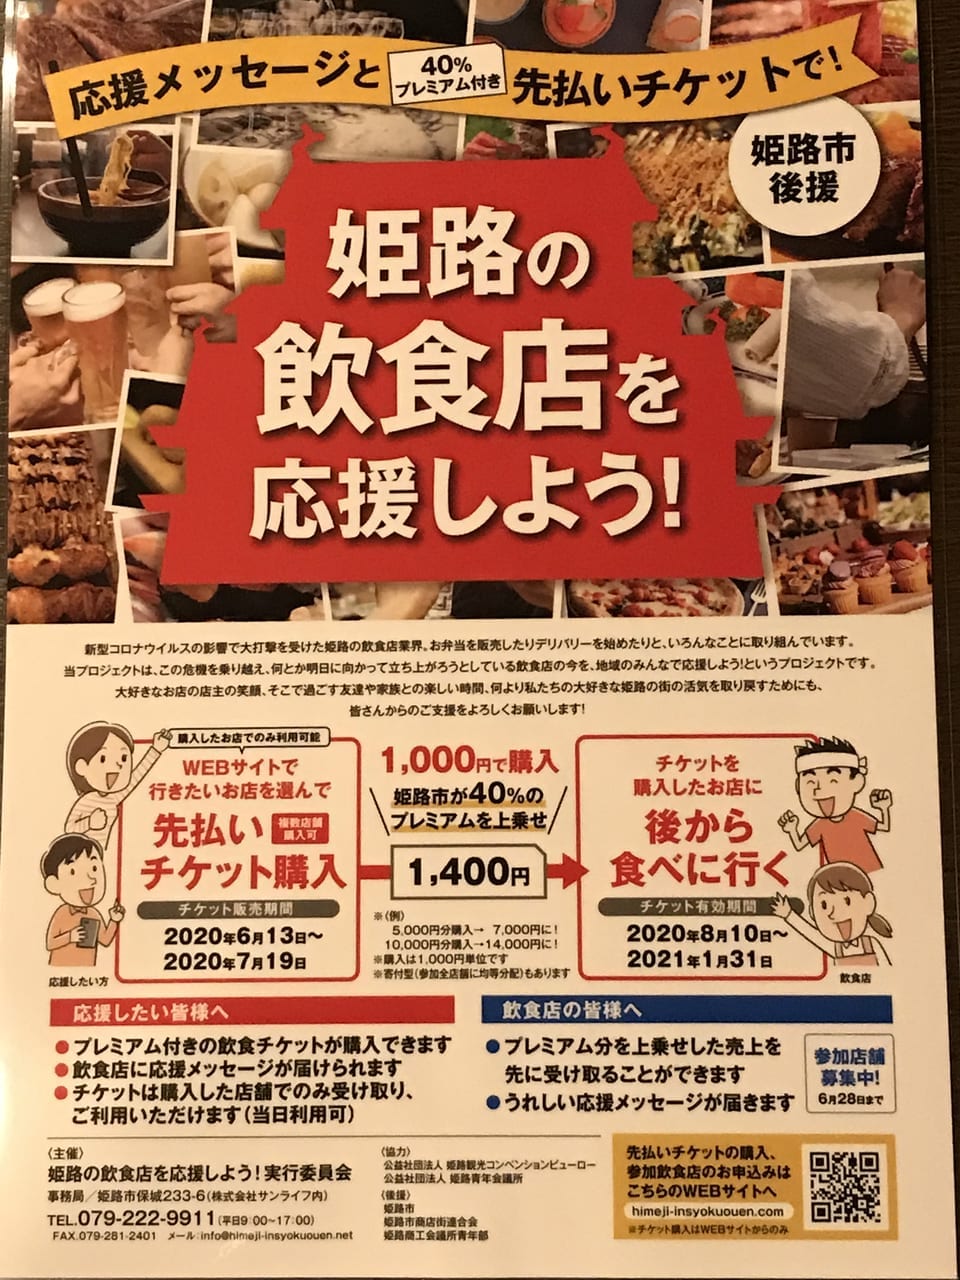 姫路の飲食店を応援しようプロジェクト！第三回目の購入日延期のおしらせ